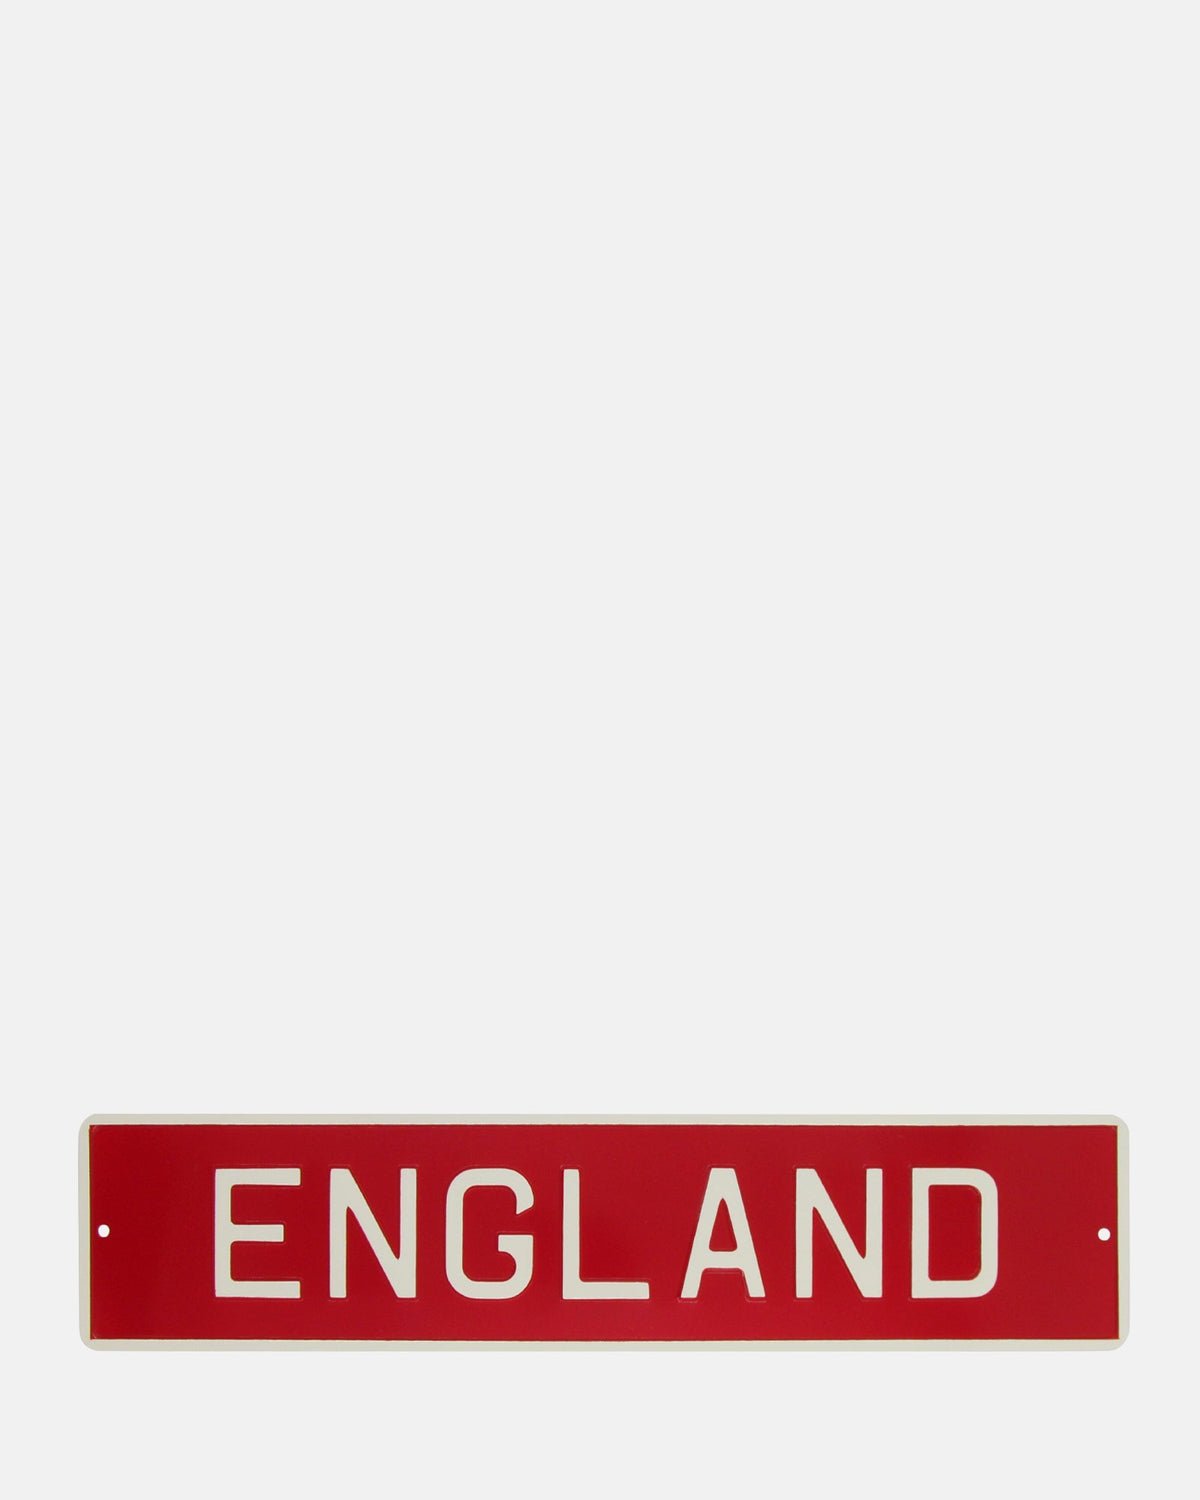 ENGLAND Enamel Sign - BRIT LOCKER